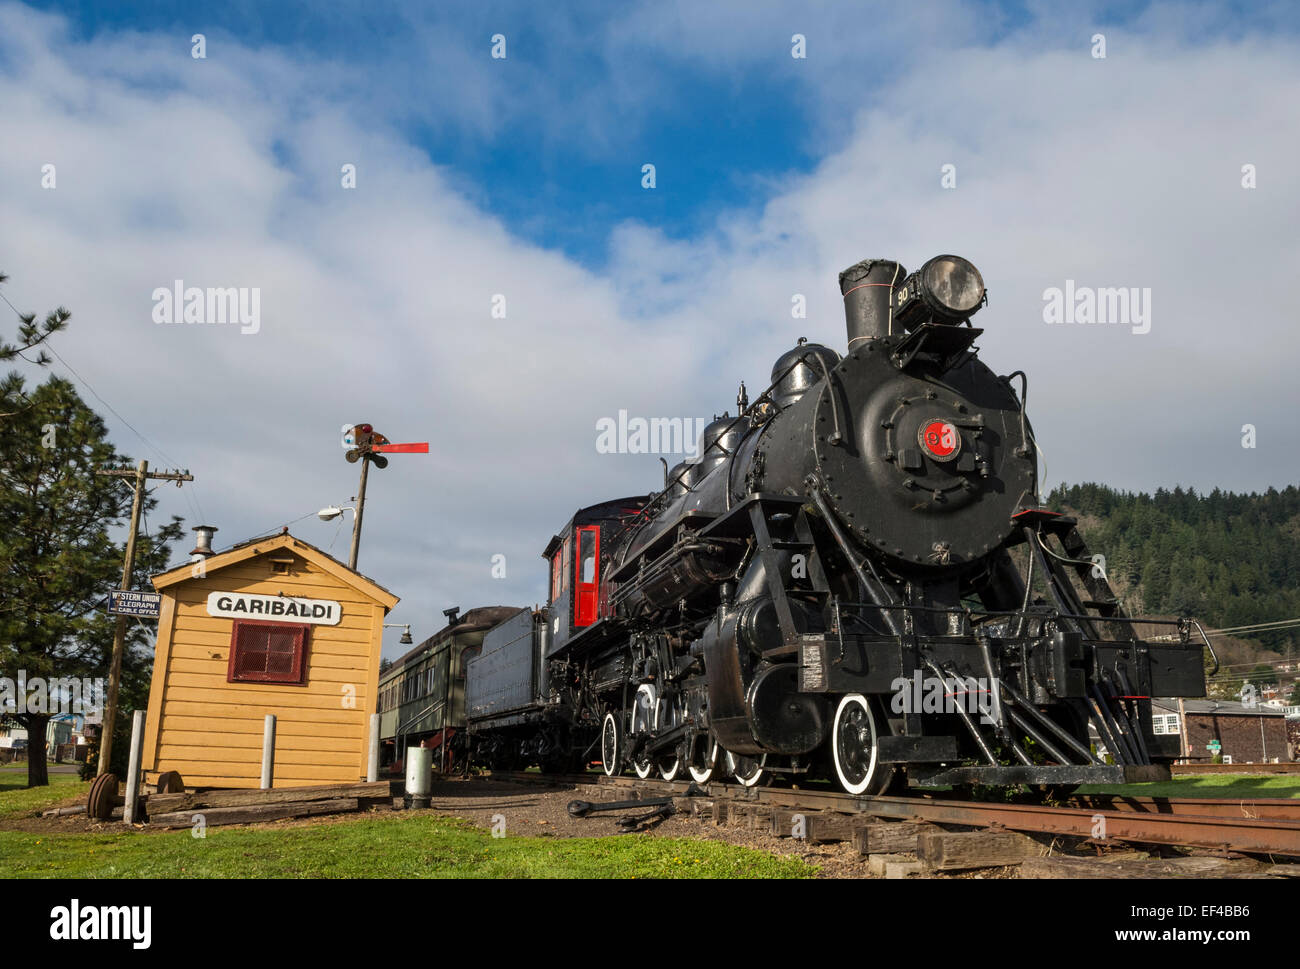 American railway -Fotos und -Bildmaterial in hoher Auflösung – Alamy